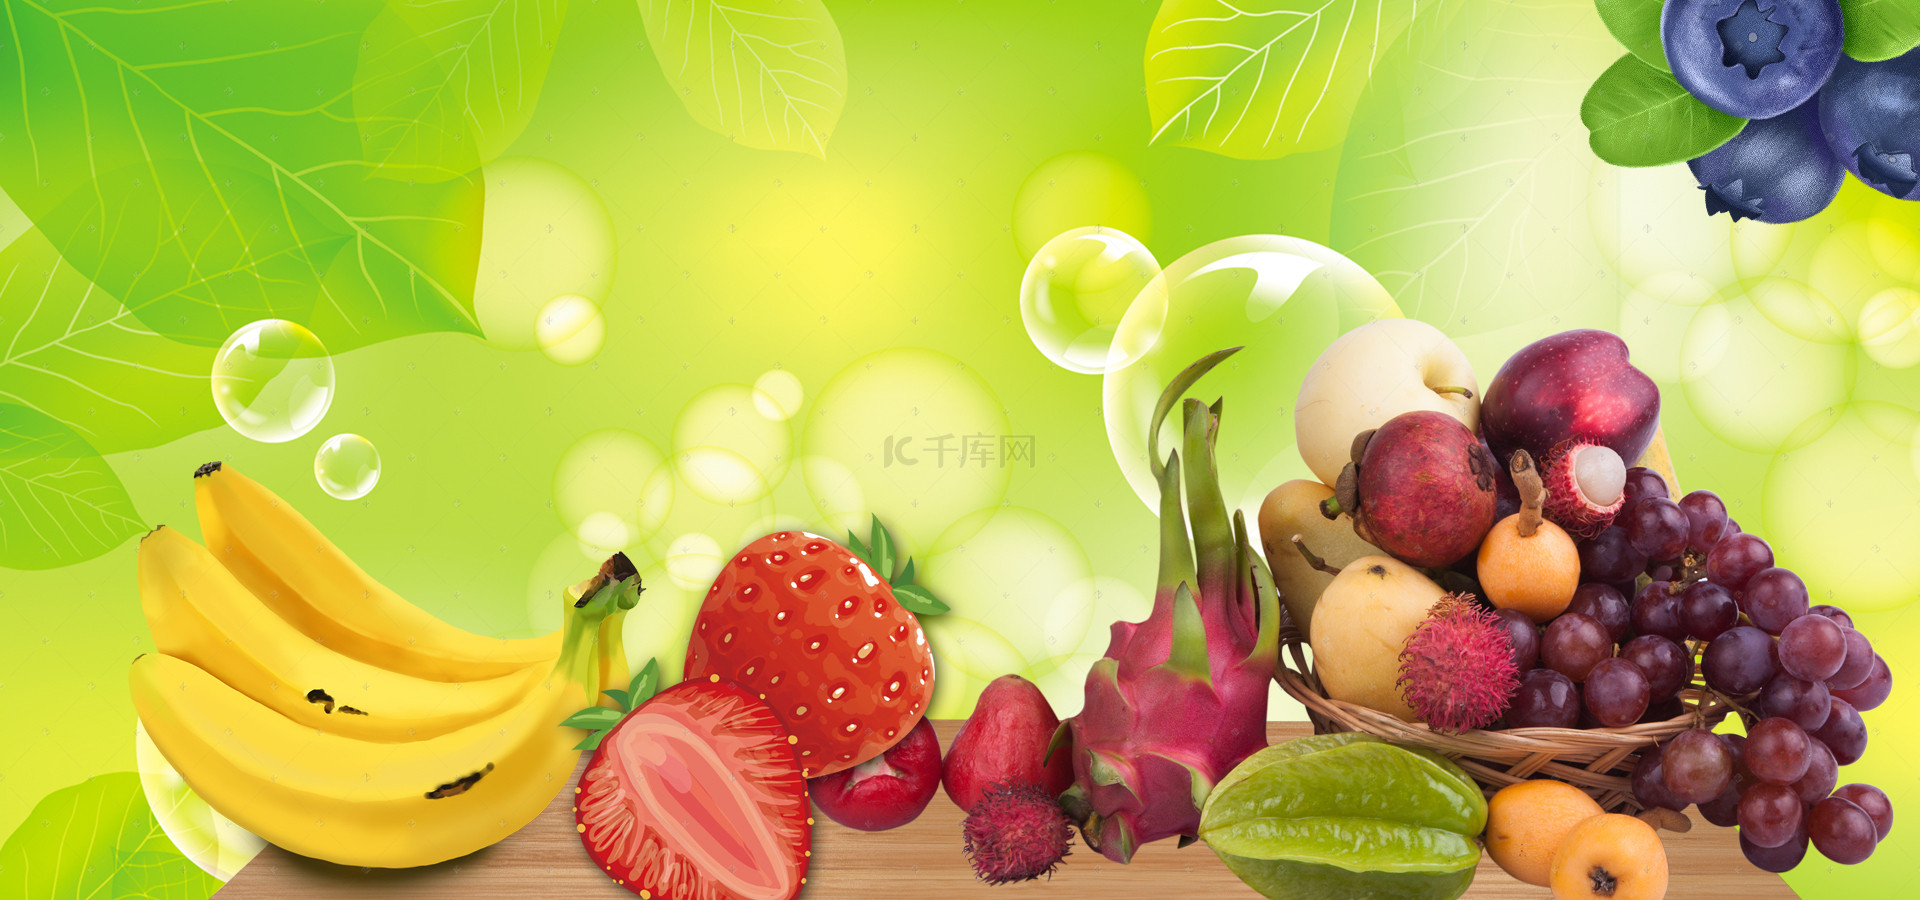 葡萄水果海报背景图片_水果超市海报背景素材